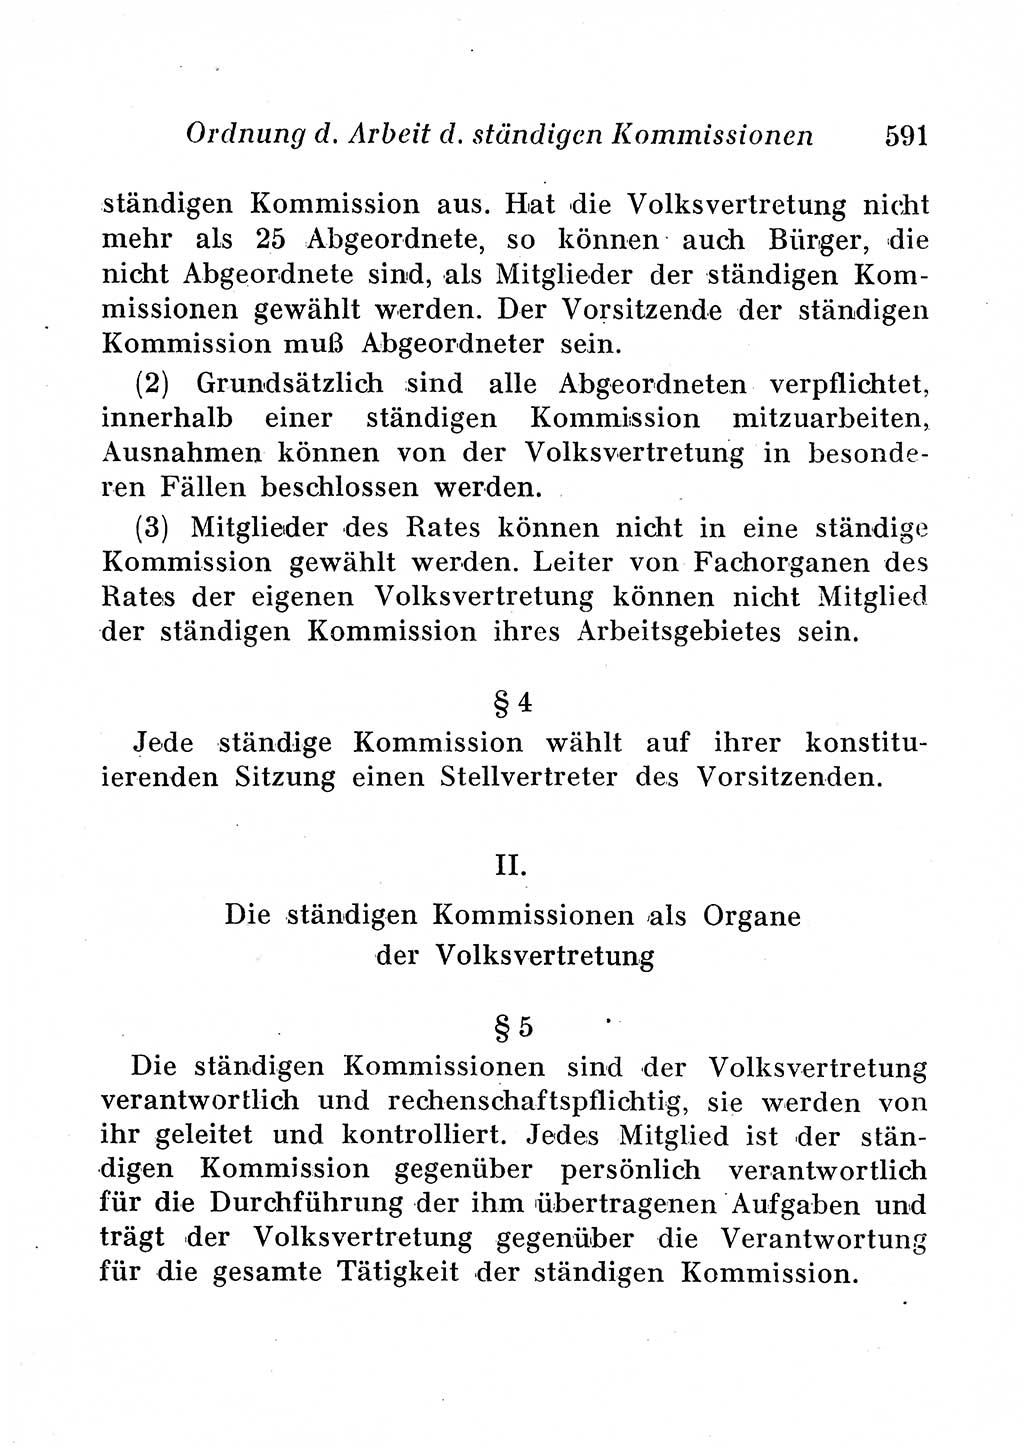 Staats- und verwaltungsrechtliche Gesetze der Deutschen Demokratischen Republik (DDR) 1958, Seite 591 (StVerwR Ges. DDR 1958, S. 591)